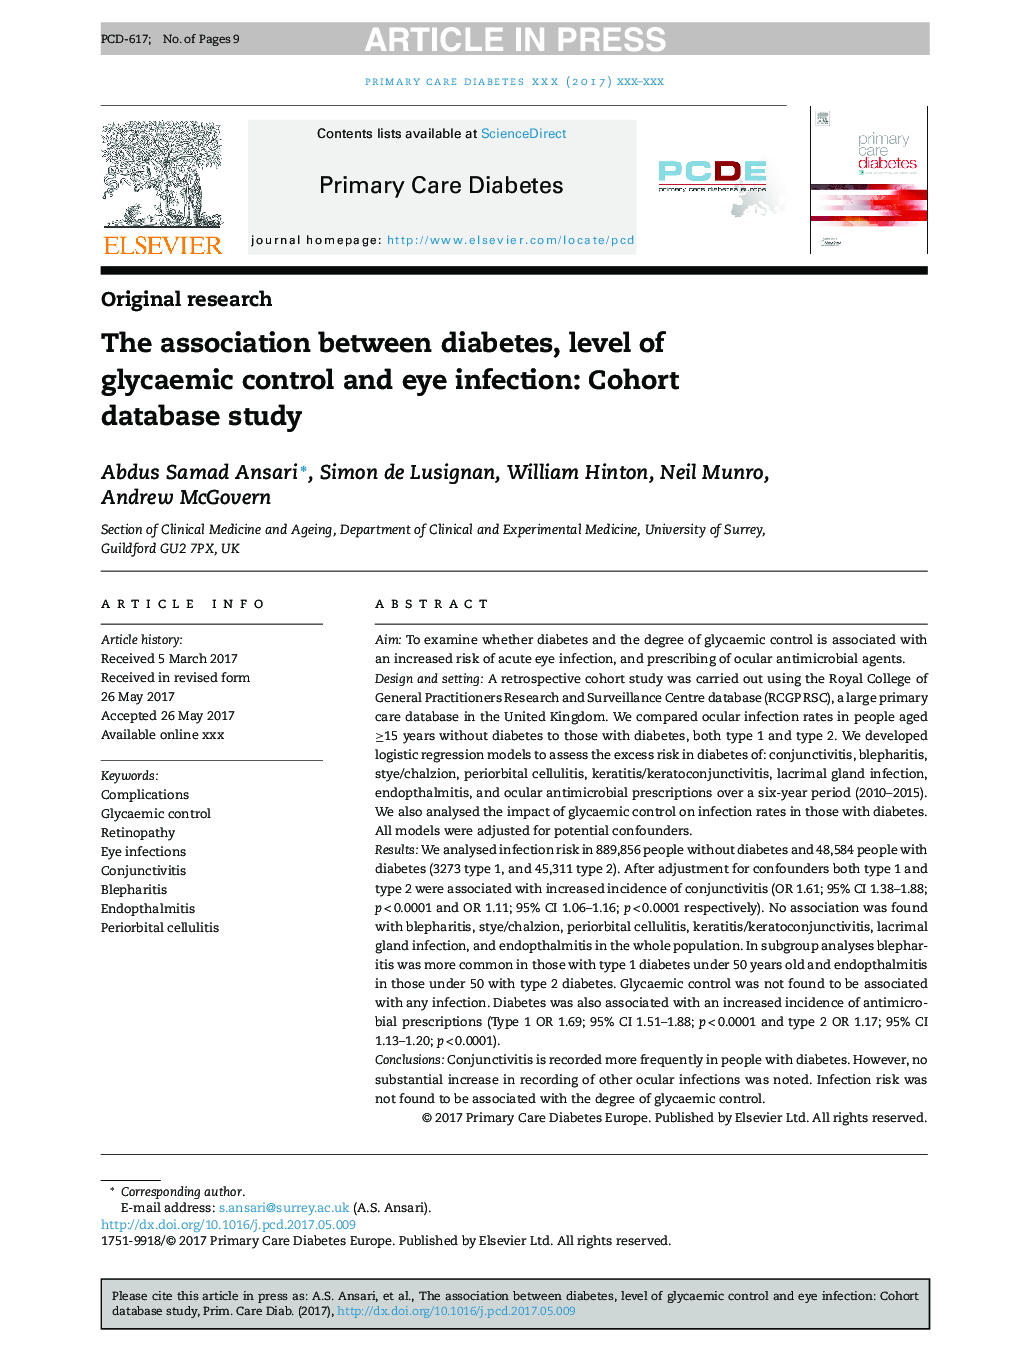 ارتباط بین دیابت، سطح کنترل گلیسمی و عفونت چشم: مطالعه پایگاه داده کوهورت 